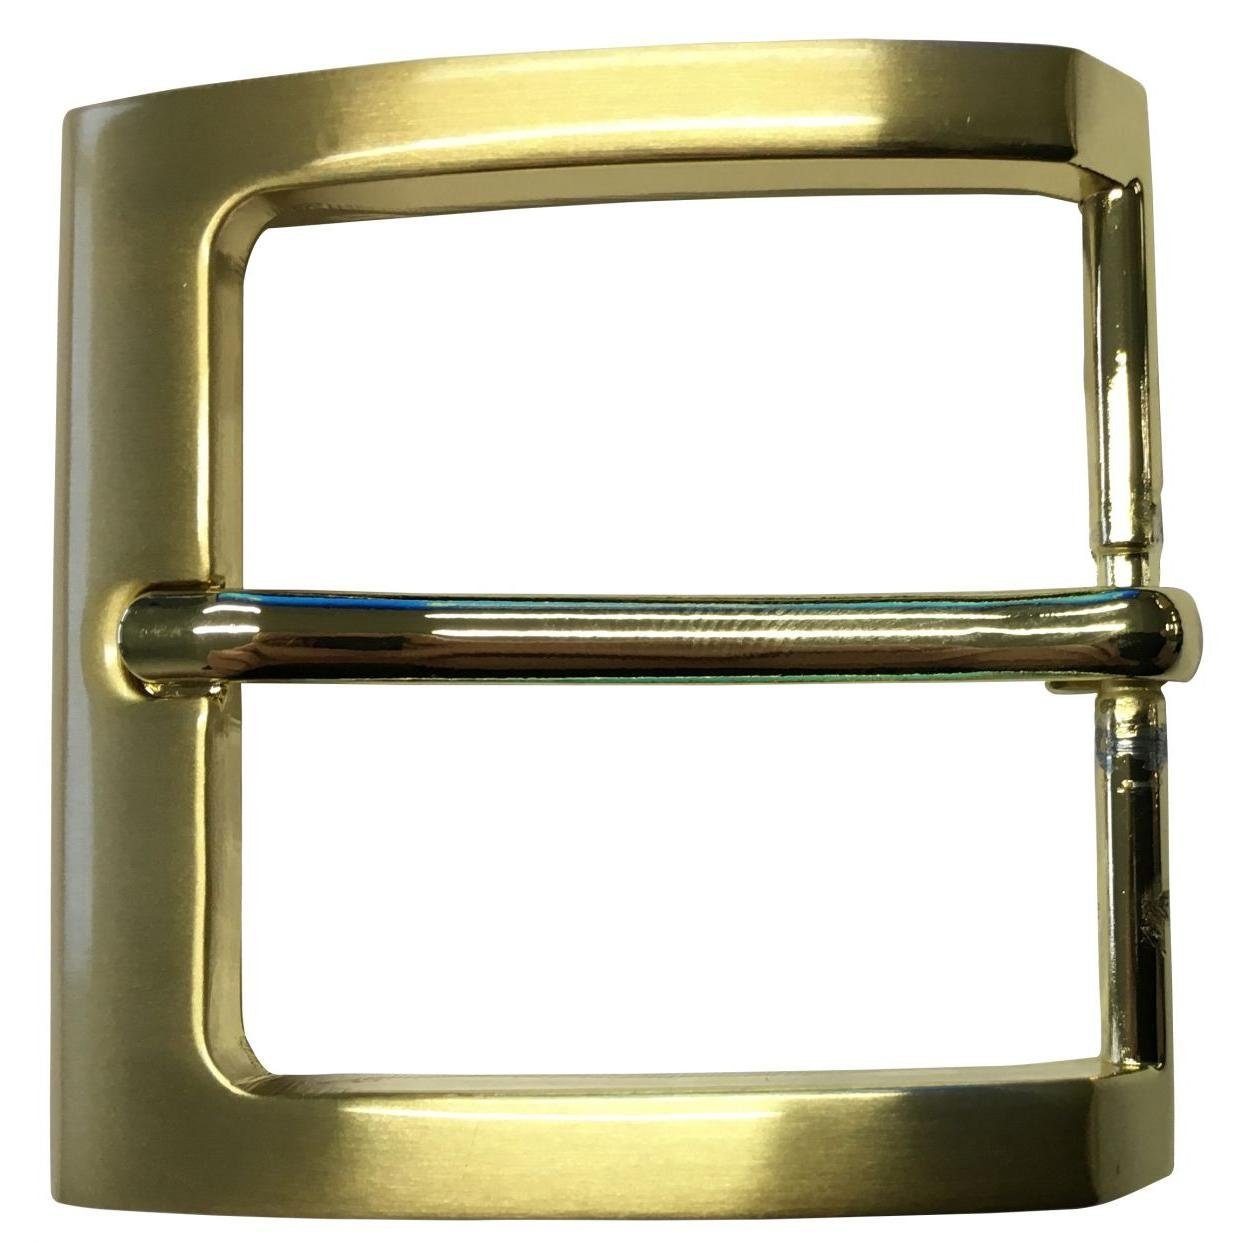 Gürtelschließe - Dorn-Schließe Gürtelschnalle 40mm - BELTINGER Wechselschließe cm 4,0 Matt Gürtel - Gold,